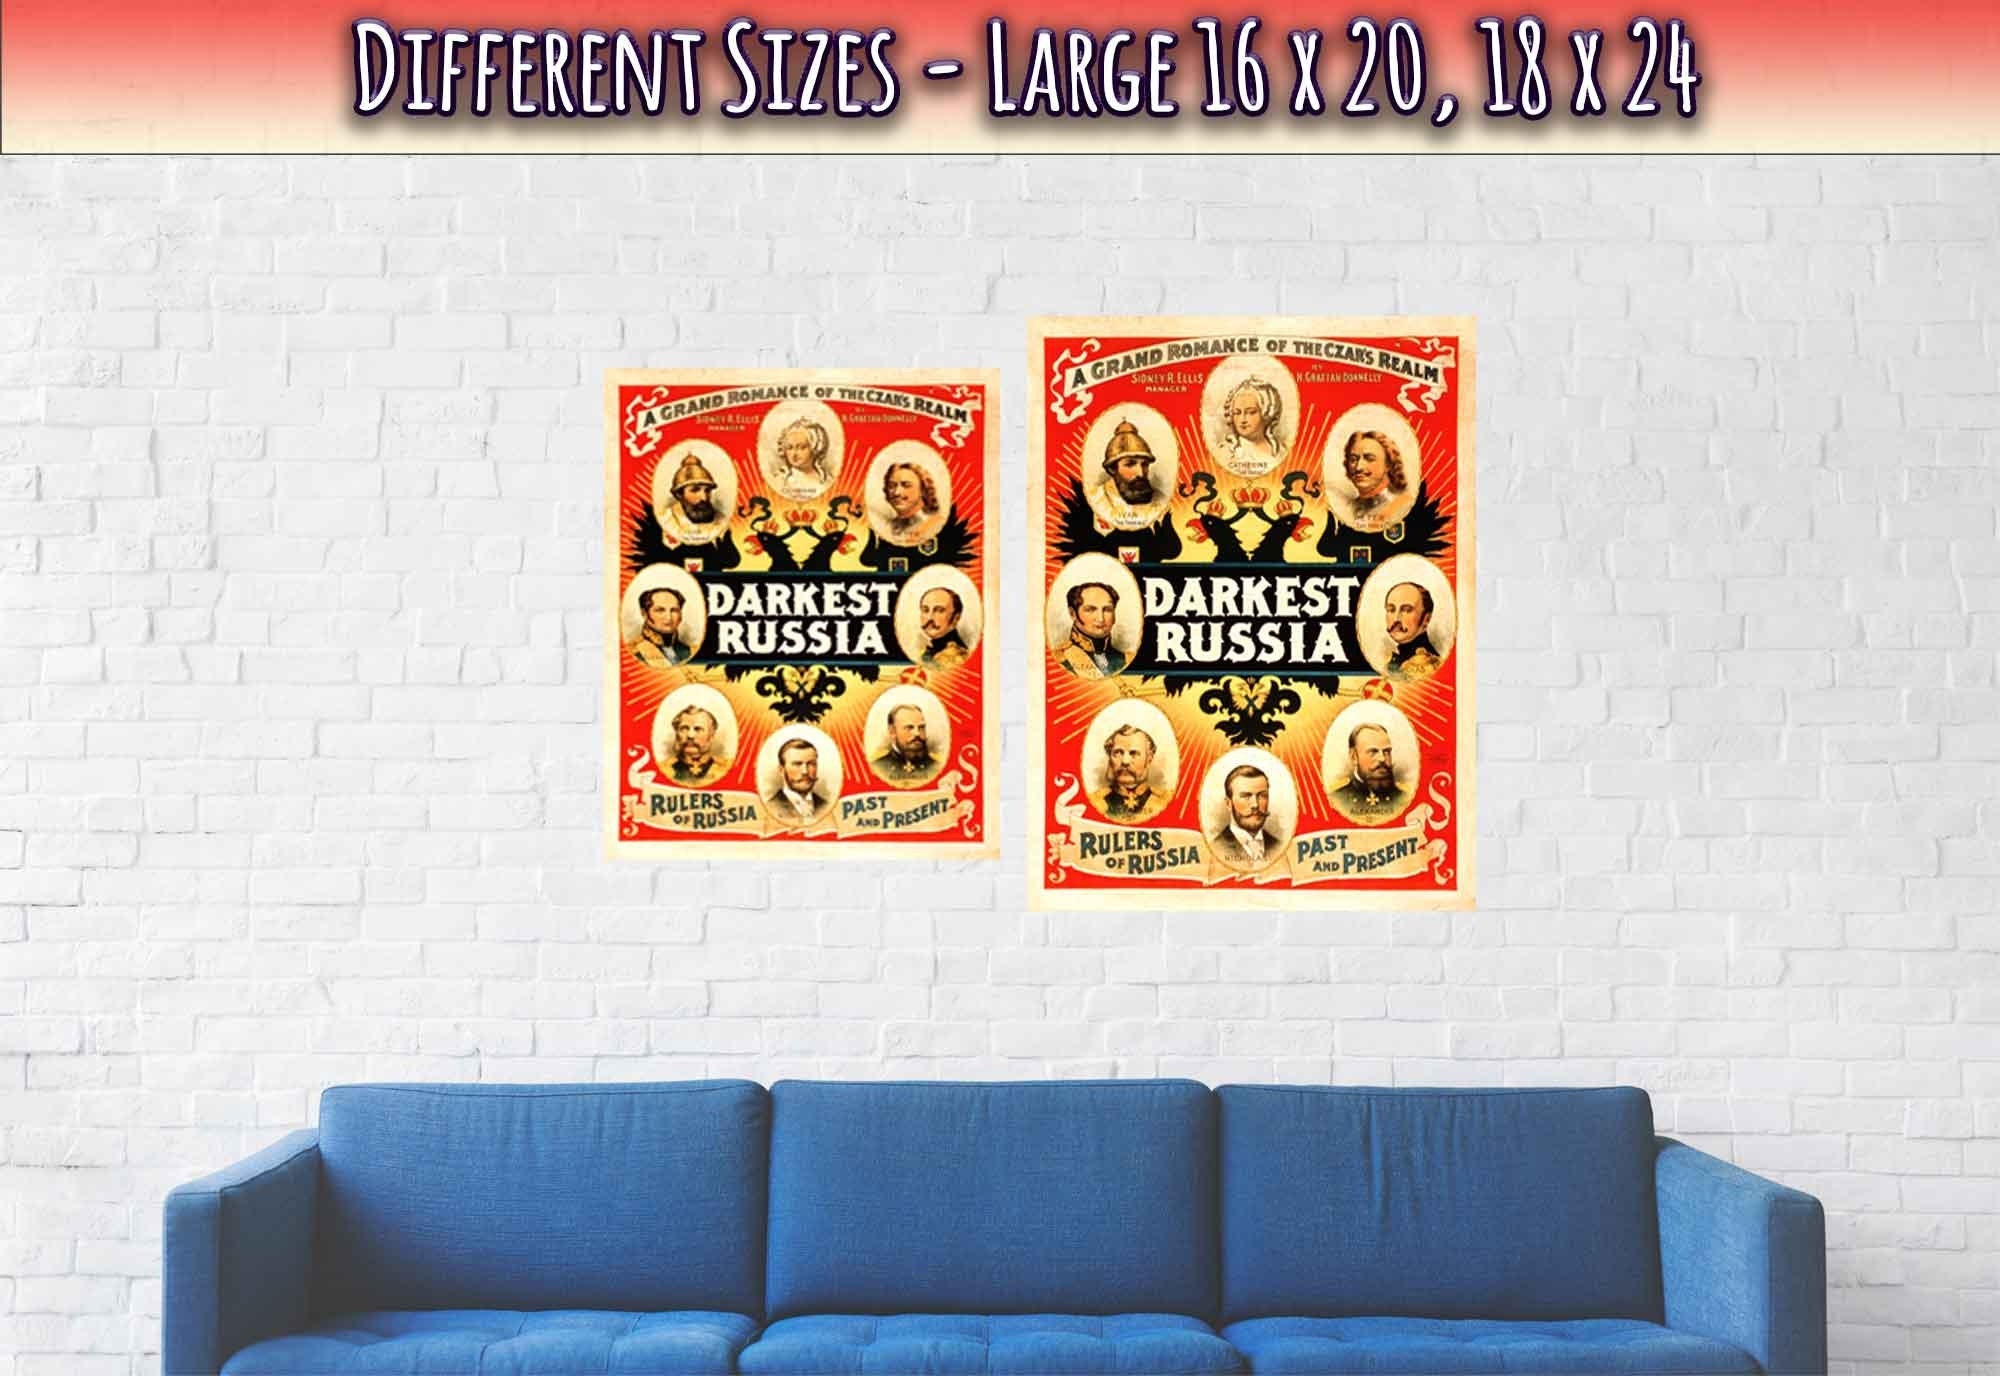 Vintage Russian Poster Darkest Russian, A Grand Romance Print Theater Poster - WallArtPrints4U